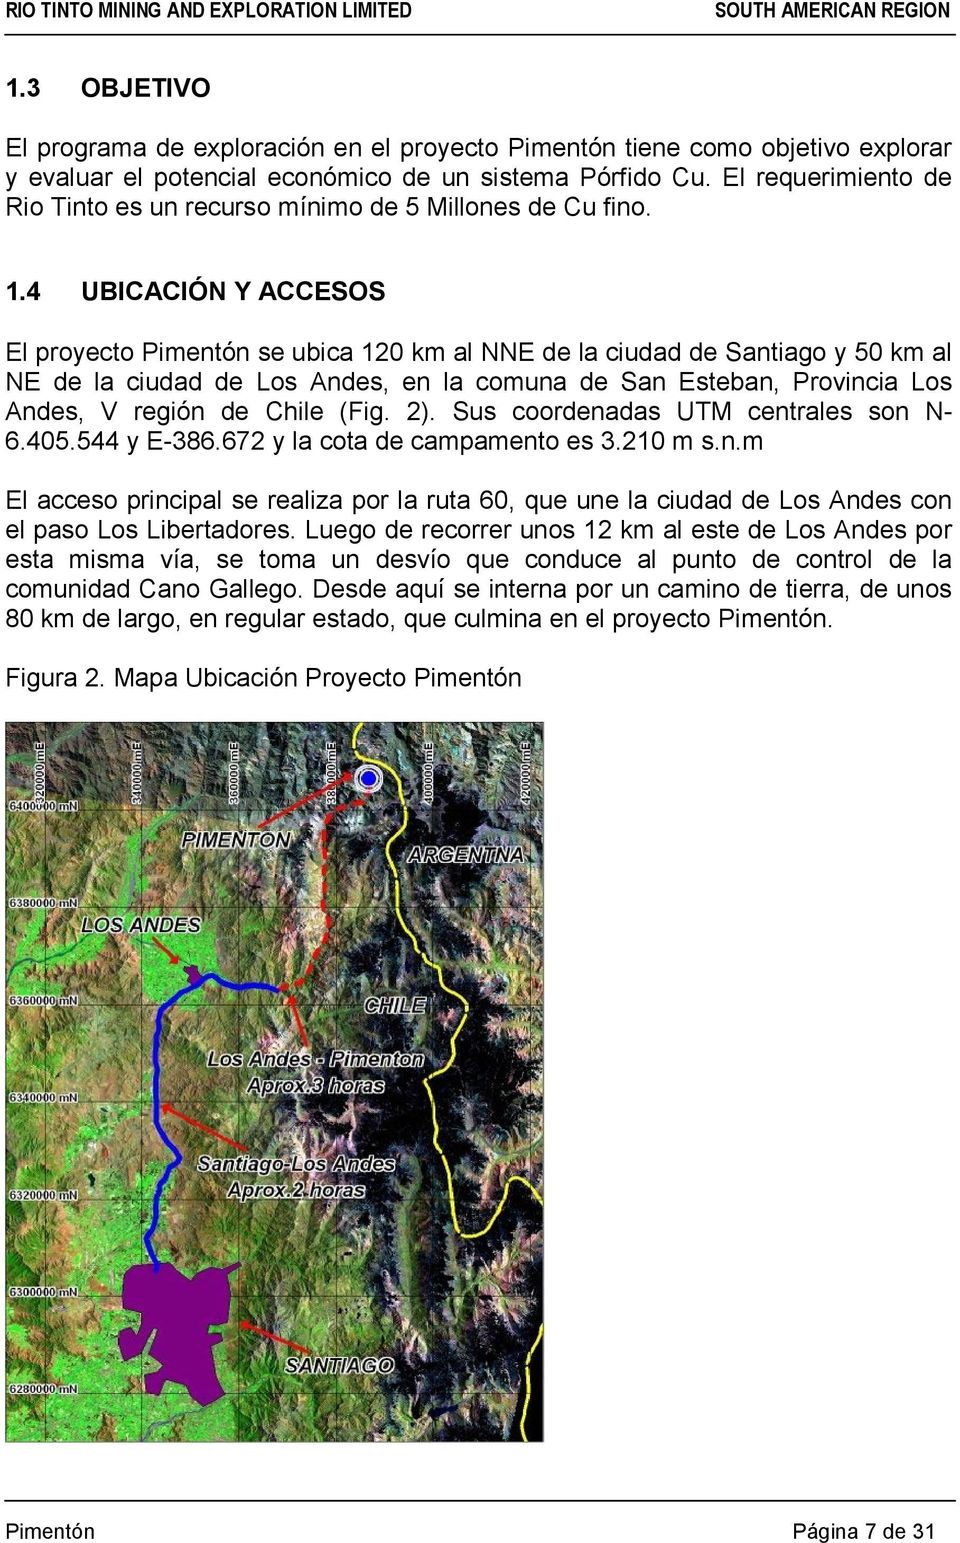 4 UBICACIÓN Y ACCESOS El proyecto Pimentón se ubica 120 km al NNE de la ciudad de Santiago y 50 km al NE de la ciudad de Los Andes, en la comuna de San Esteban, Provincia Los Andes, V región de Chile